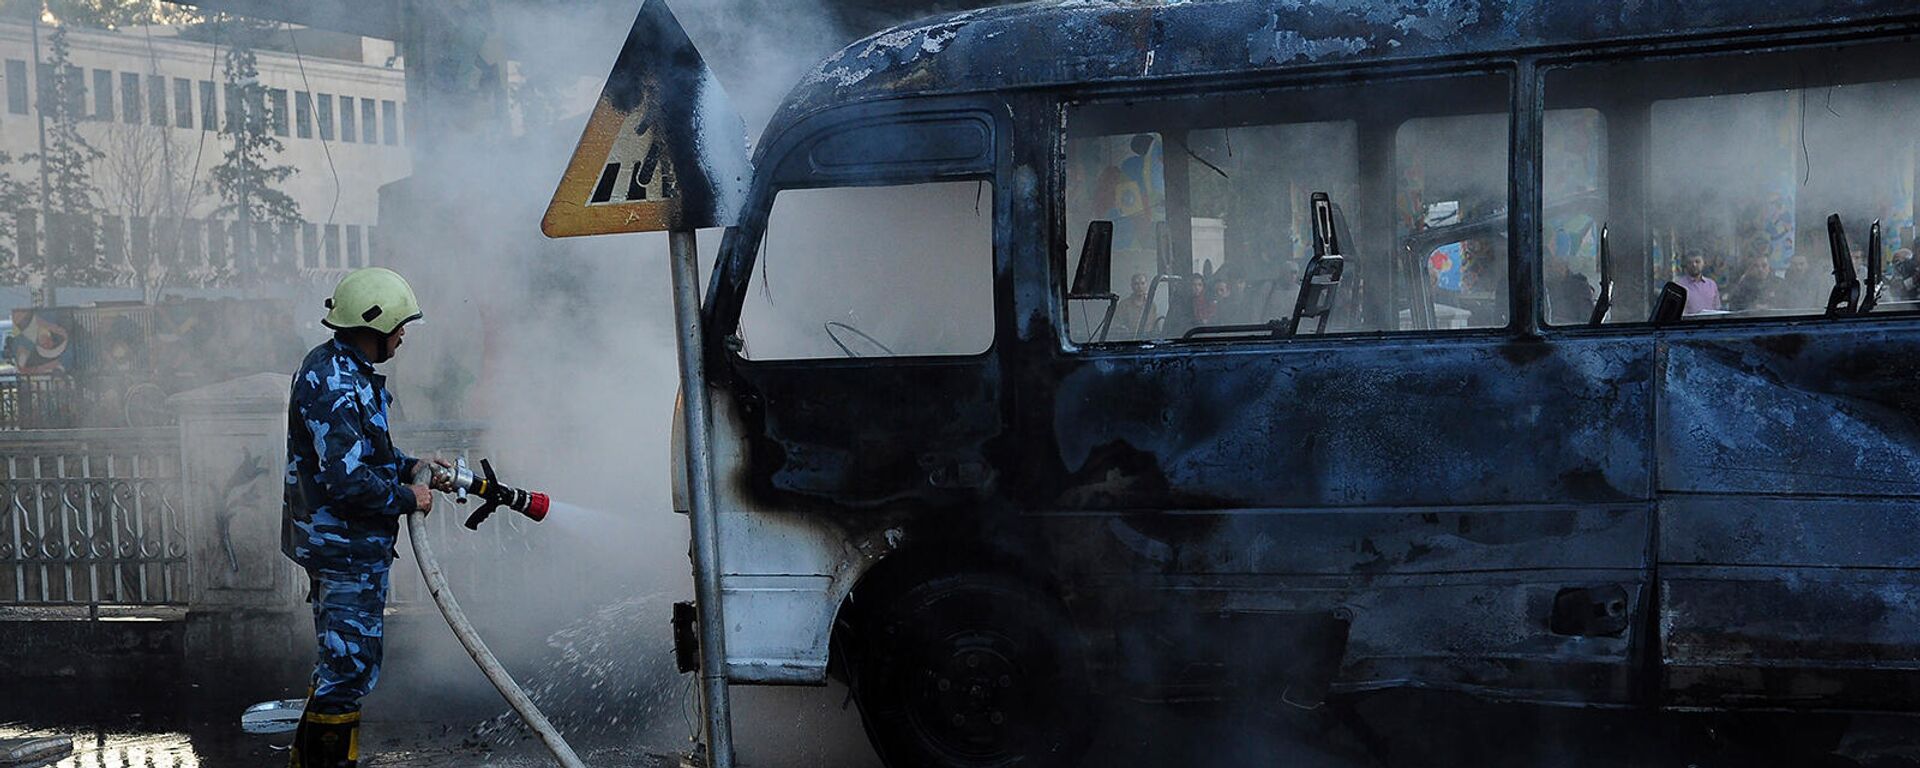 Сирийский пожарный тушит сгоревший автобус на месте взрыва (20 октября 2021). Дамаск - Sputnik Армения, 1920, 20.10.2021